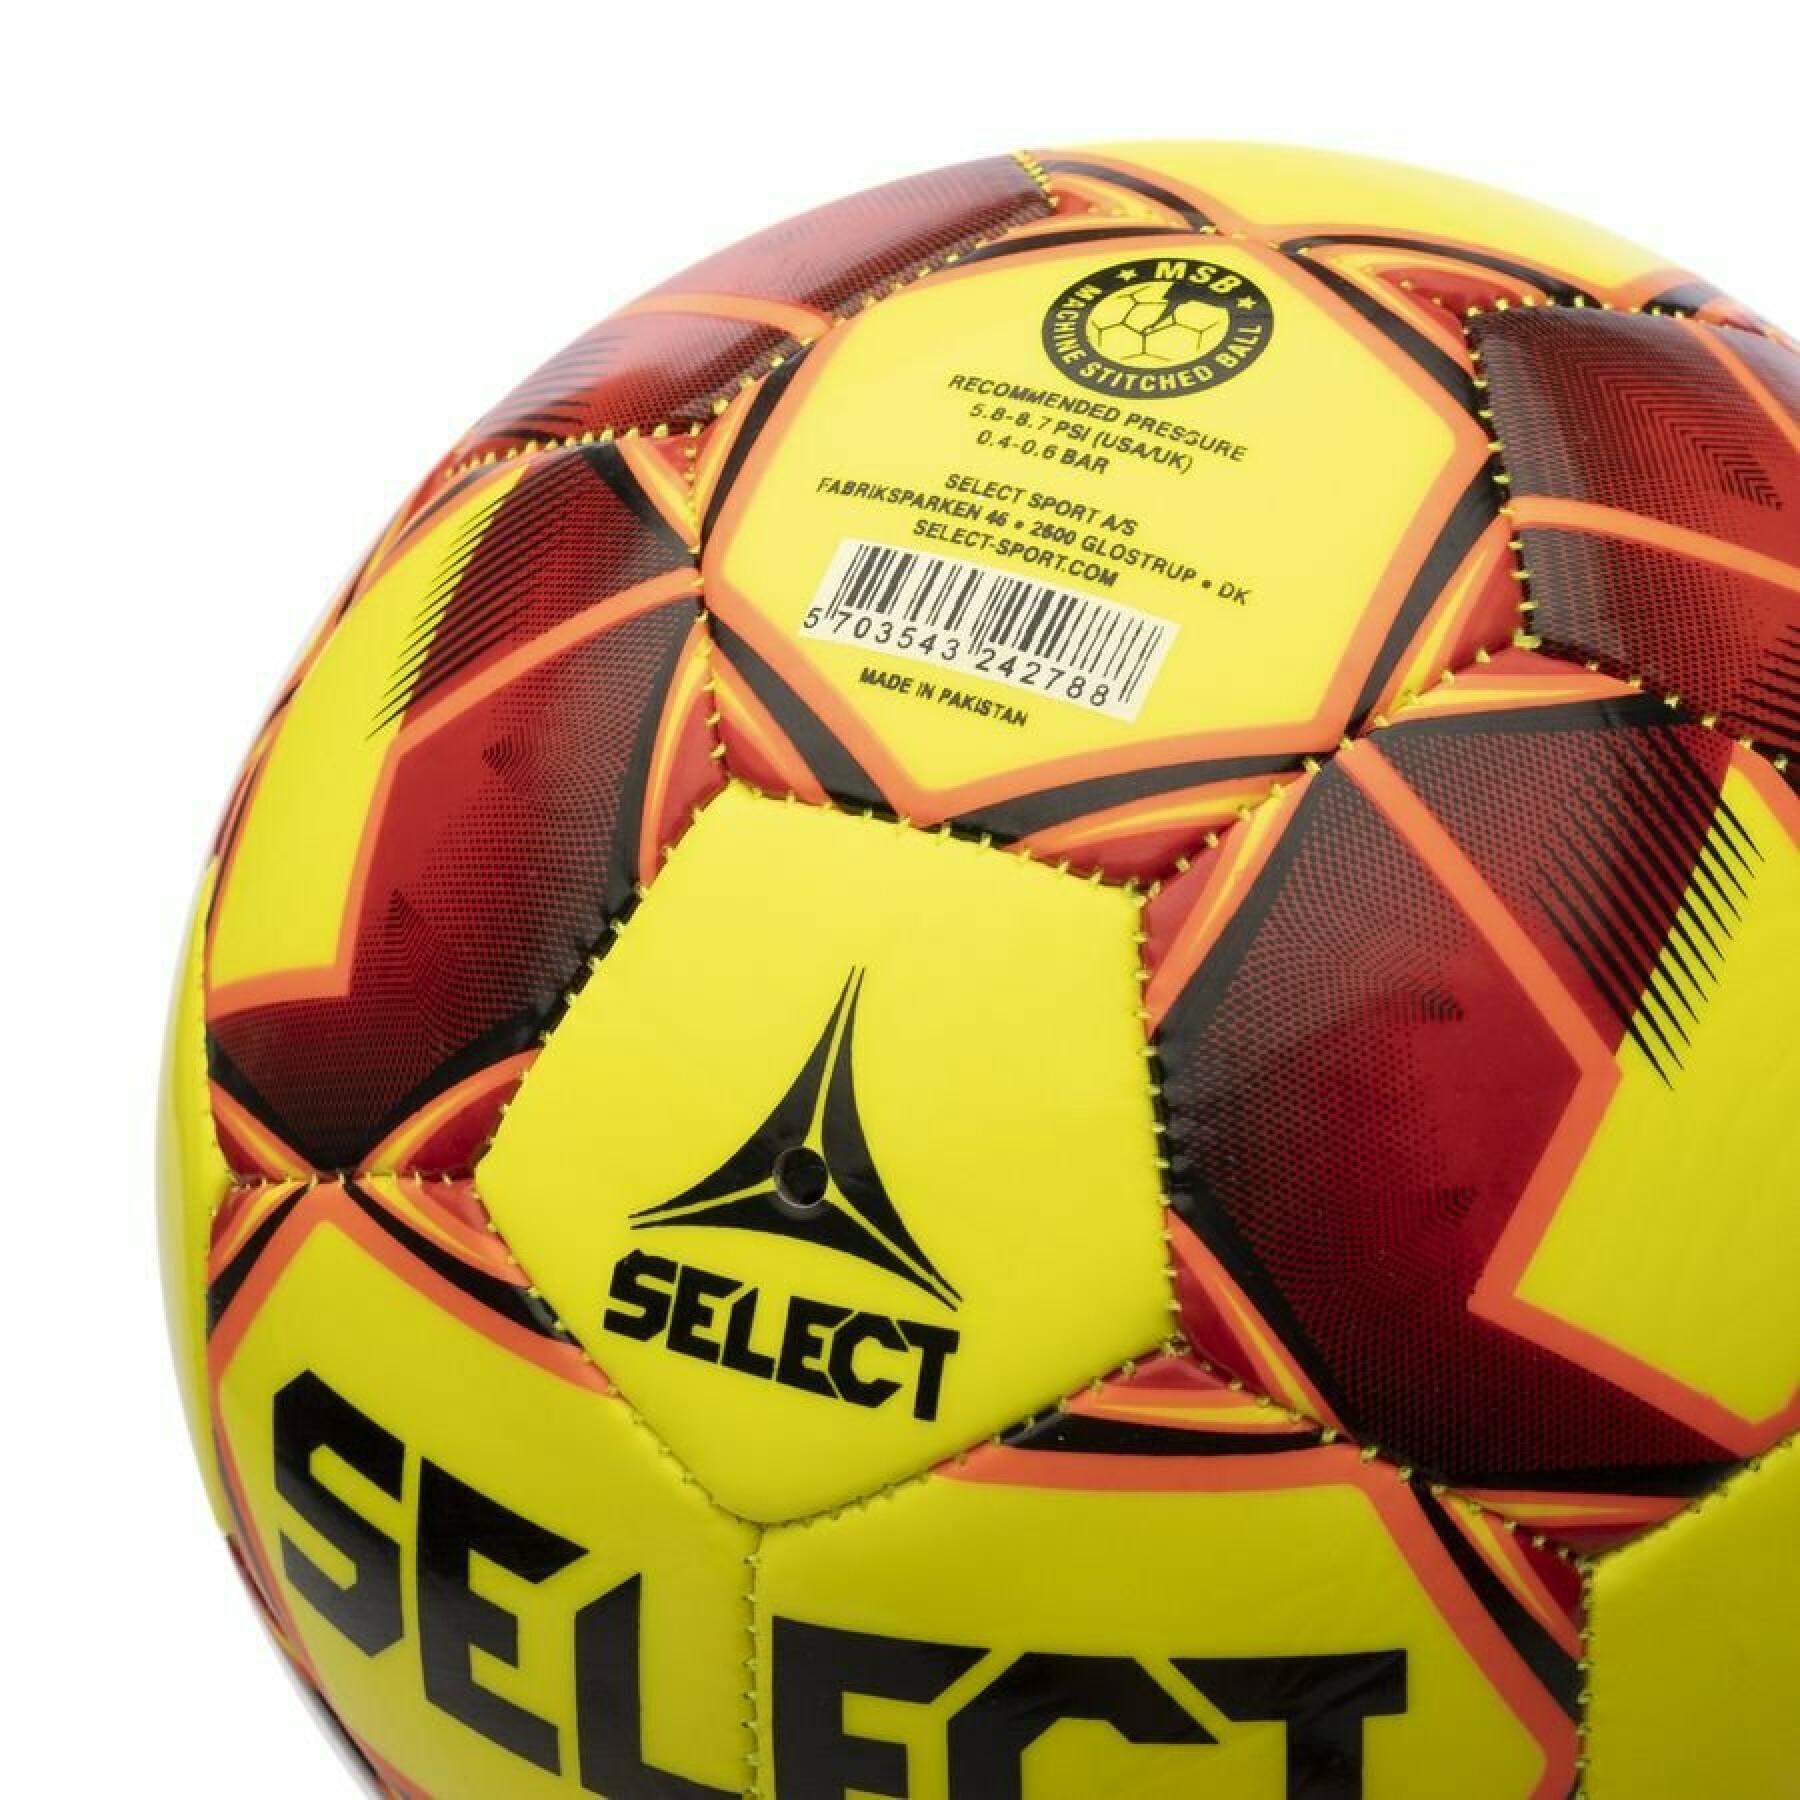 Ballong Select Futsal Talento 11